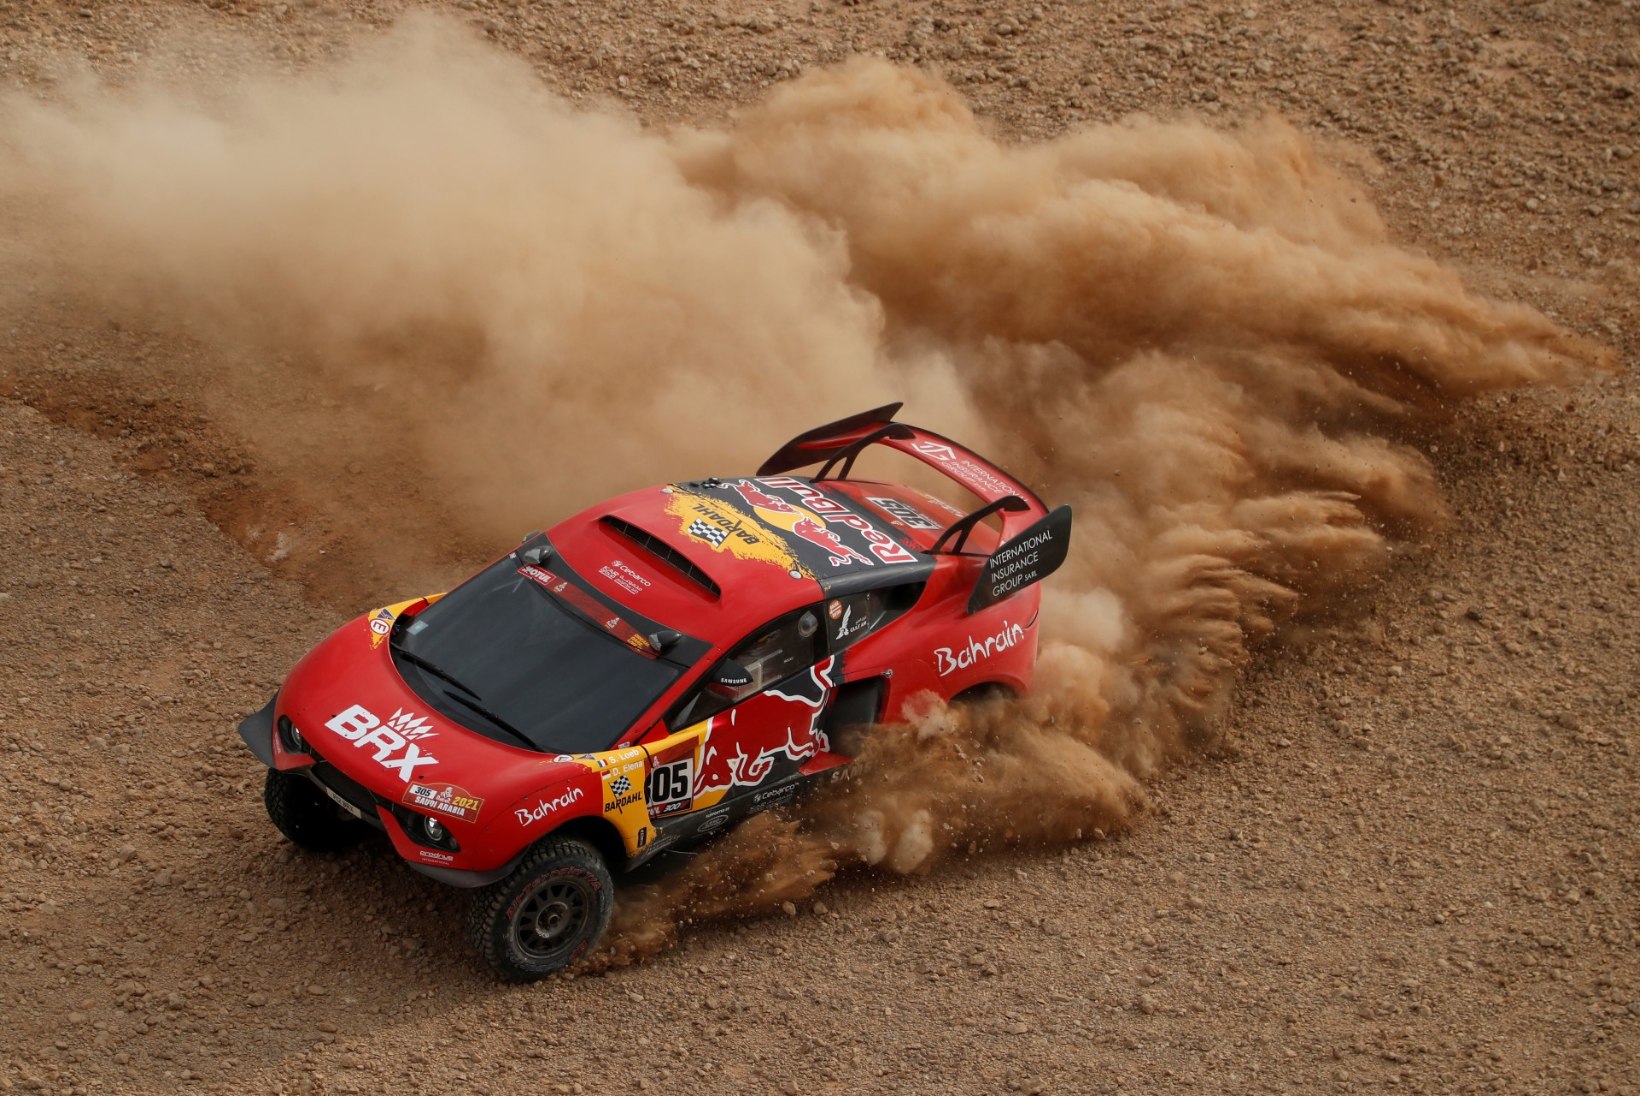 Pidevalt probleemidega võidelnud Loeb oli sunnitud Dakari ralli katkestama